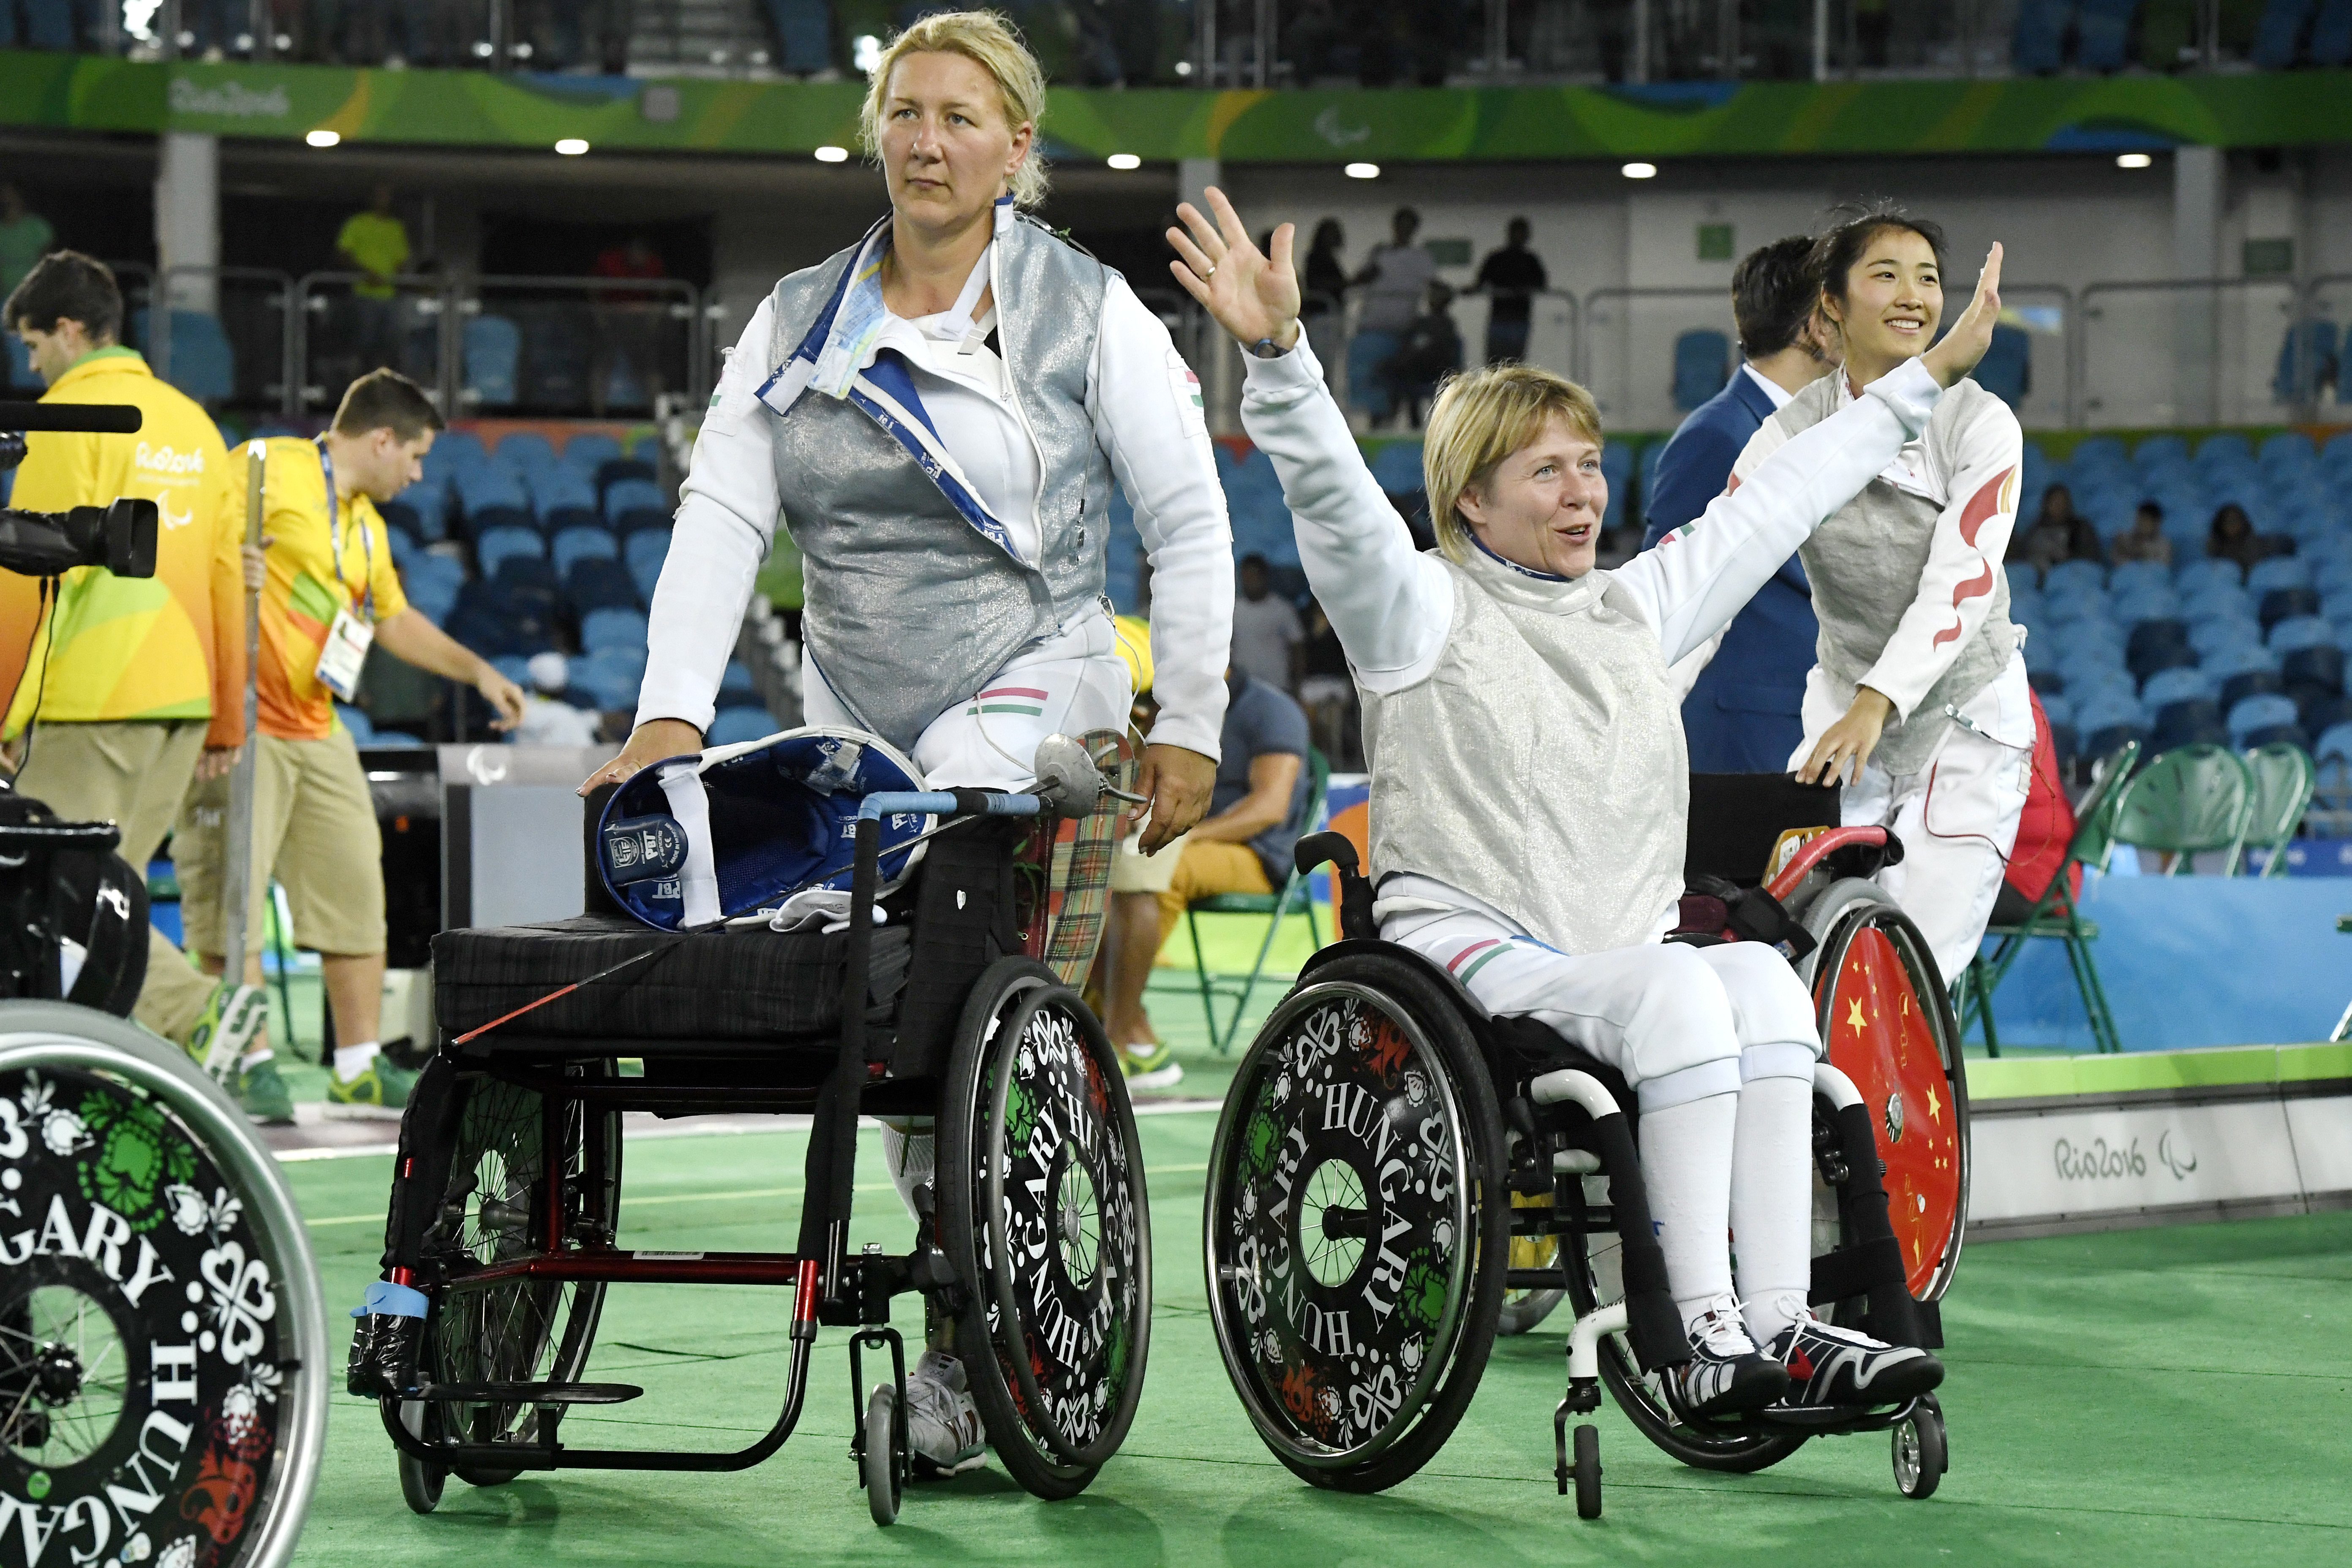 Ezüstérmet nyert a női tőrcsapat a paralimpián